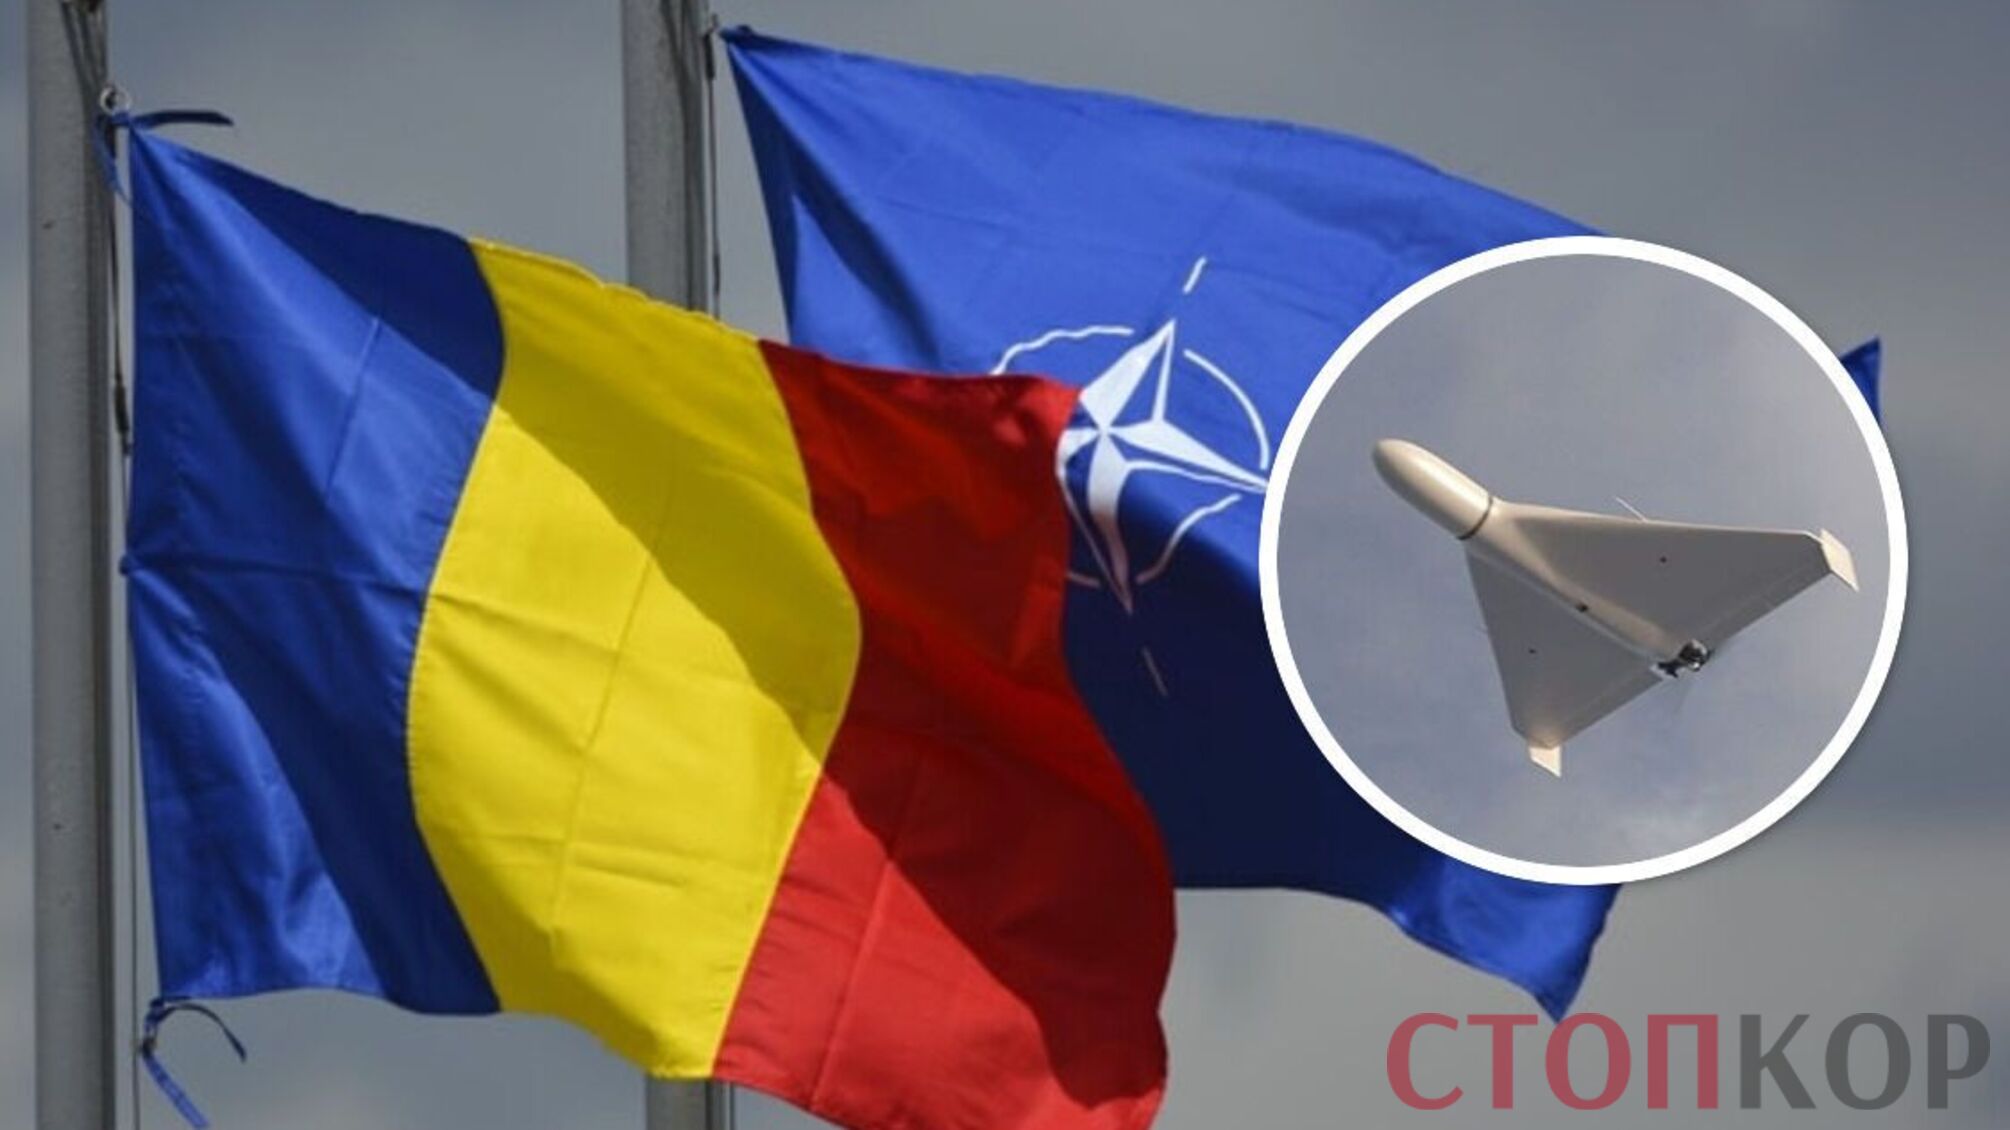 Российский БПЛА упал на территорию страны НАТО: какой будет реакция Альянса? (фото)